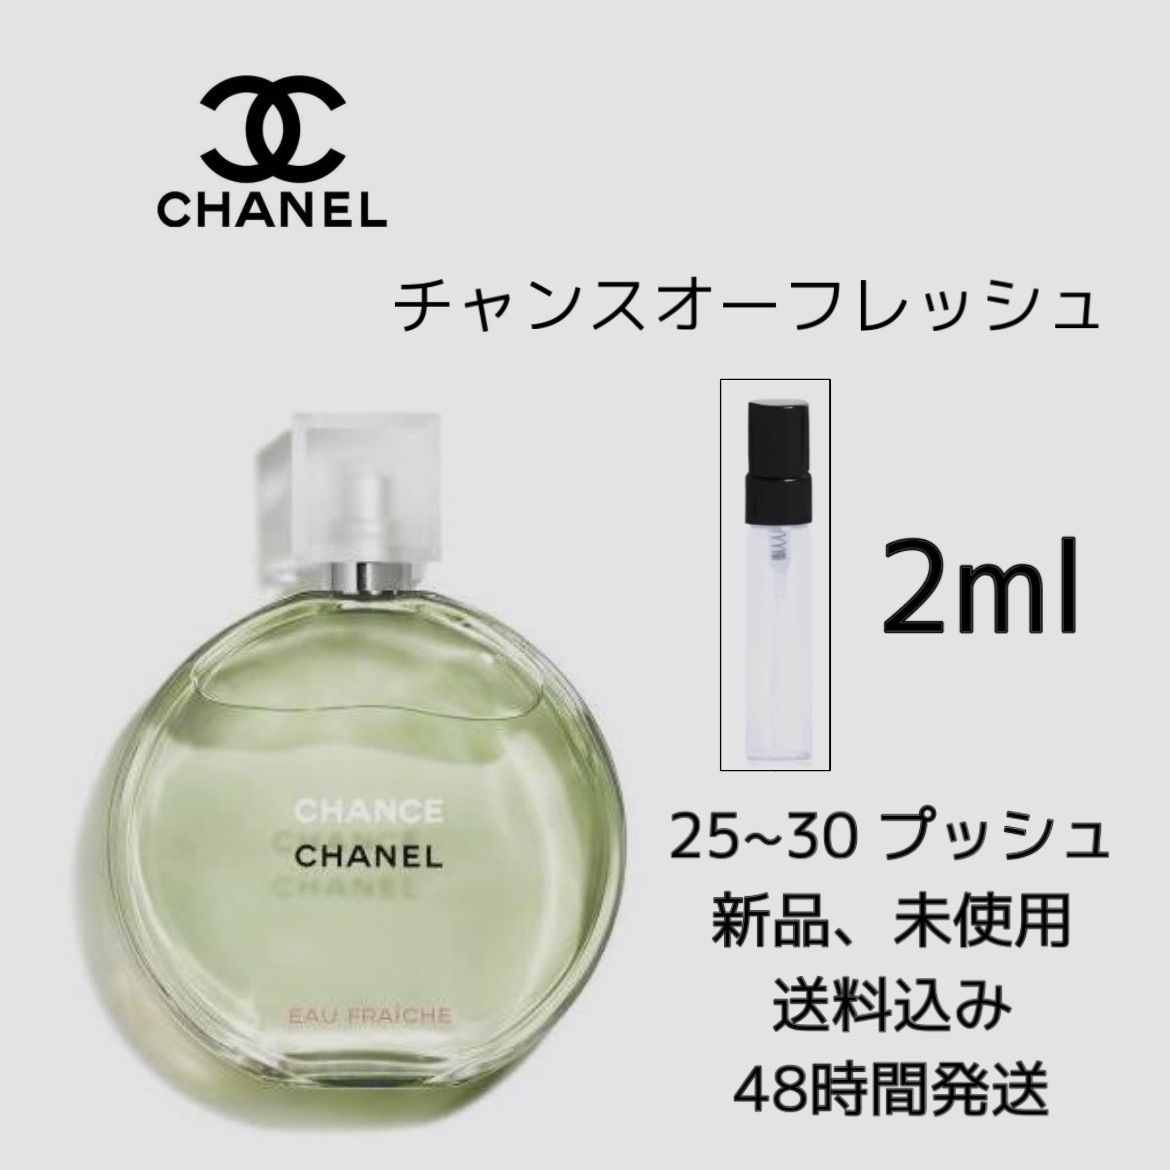 シャネル/CHANEL チャンス オーフレッシュ150ml オードゥ トワレット 